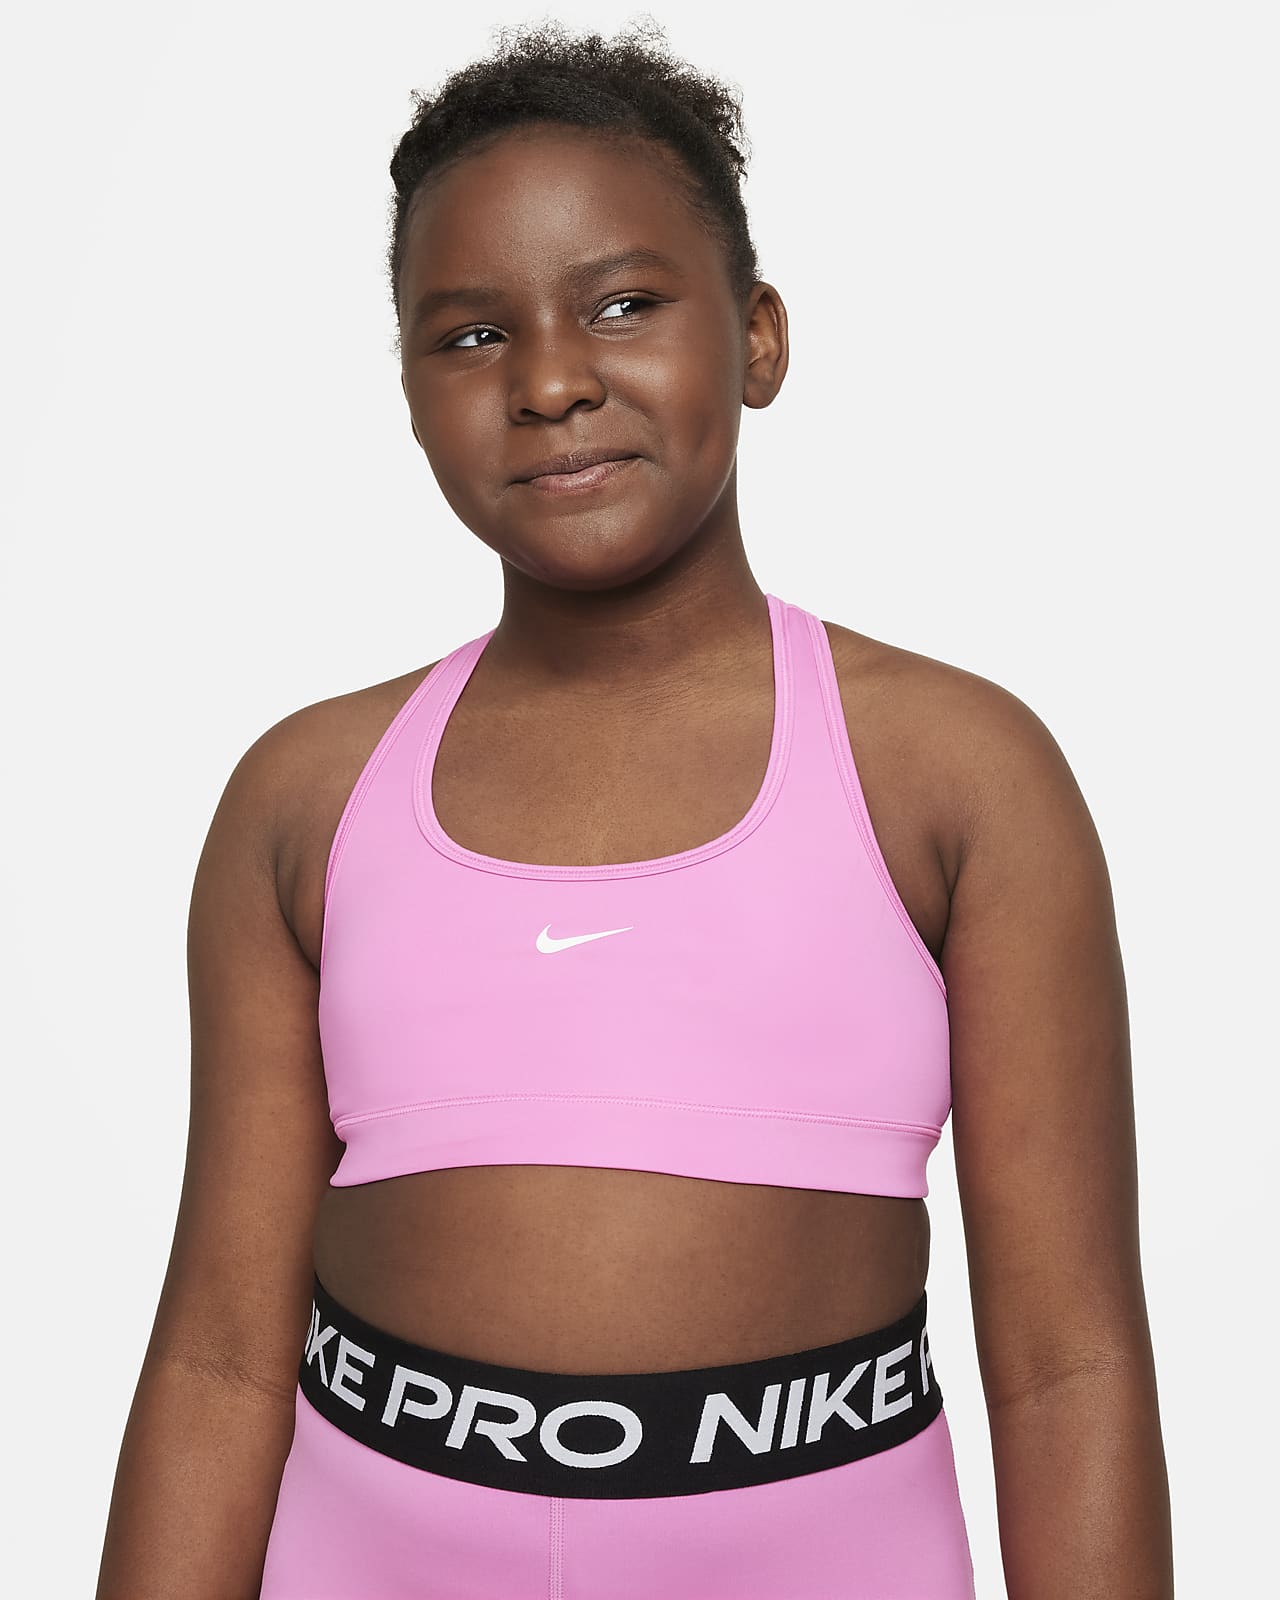 Nike Girls Big Girl's Classic Training Sports Bra Medium Black